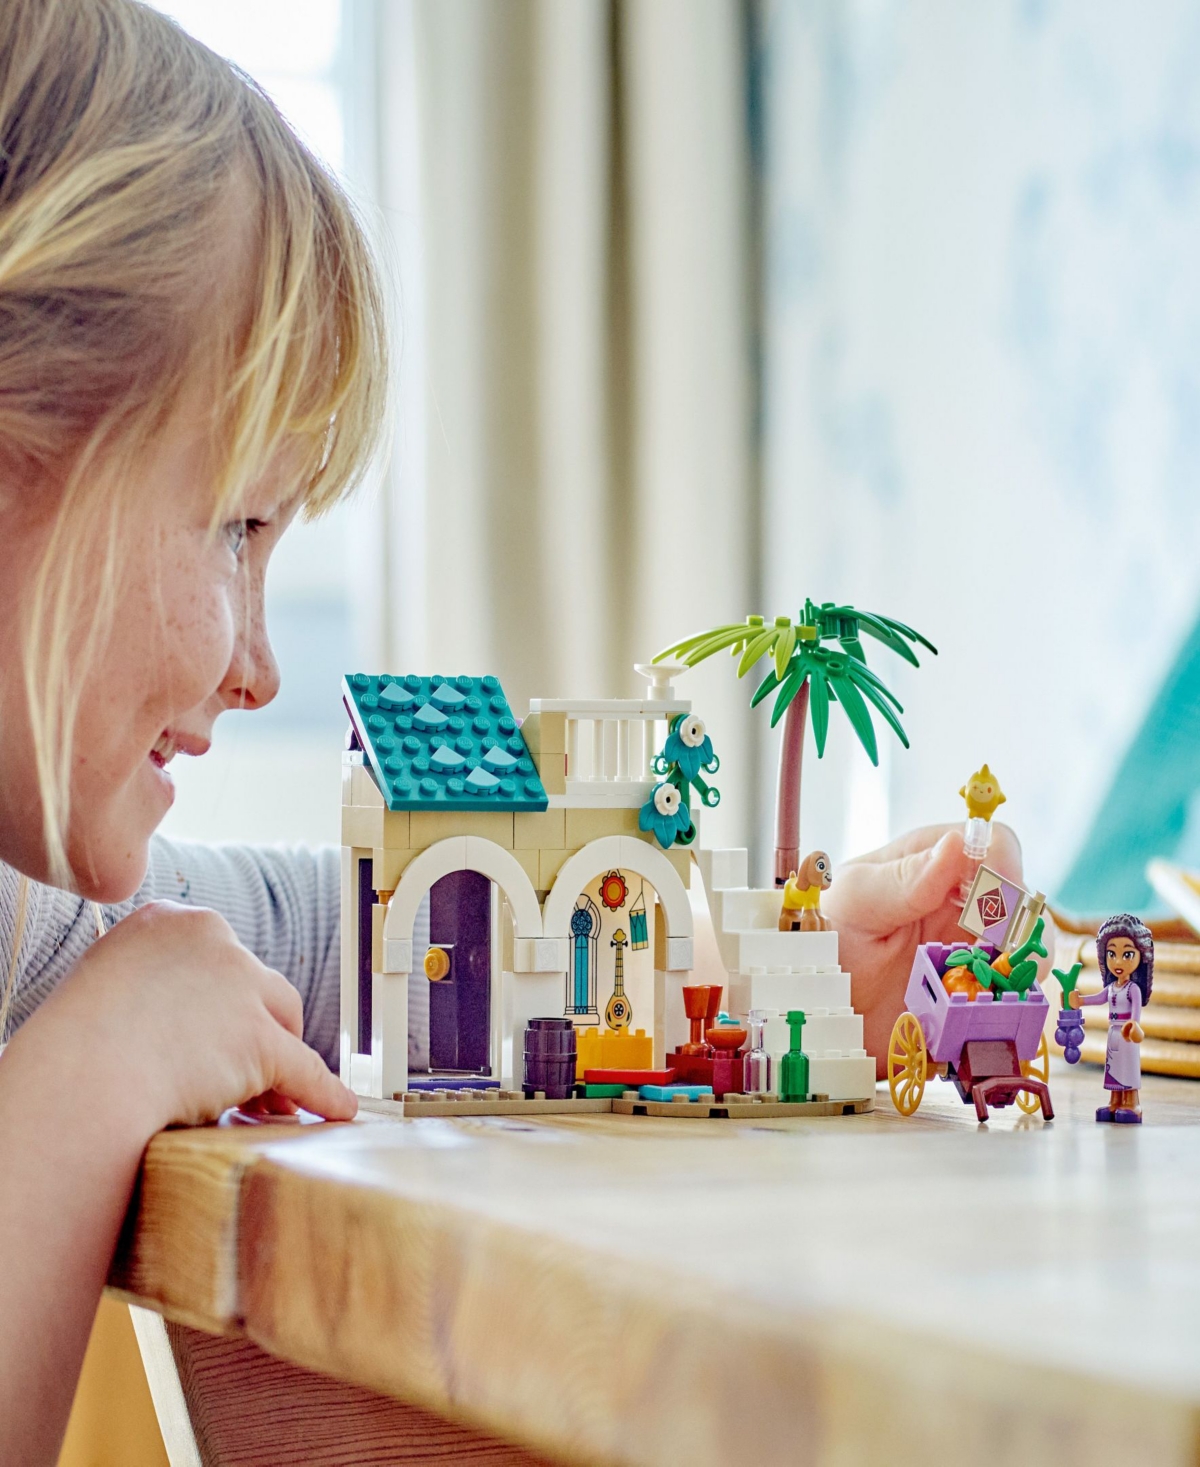 Shop Lego Disney 43224 Princess King Magnifico's Castle Toy Building Set In Multicolor